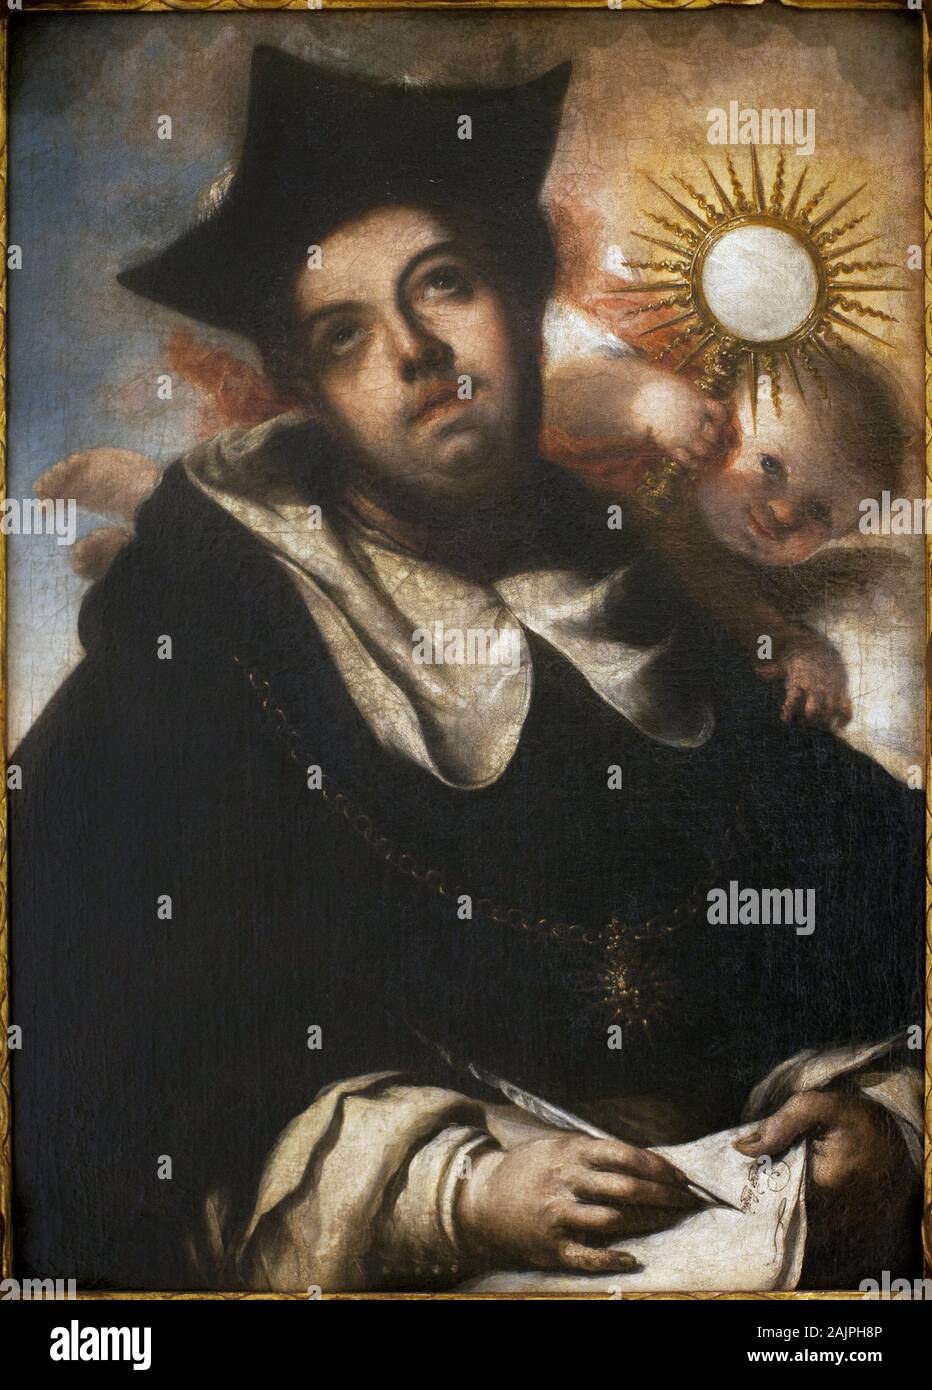 Saint Thomas d'Aquin (1124/1225-1274) - Peinture de Francisco de Herrera El Joven (1627-1685), Huile sur toile, vers 1645 - Musee des Beaux Arts de Se Foto Stock